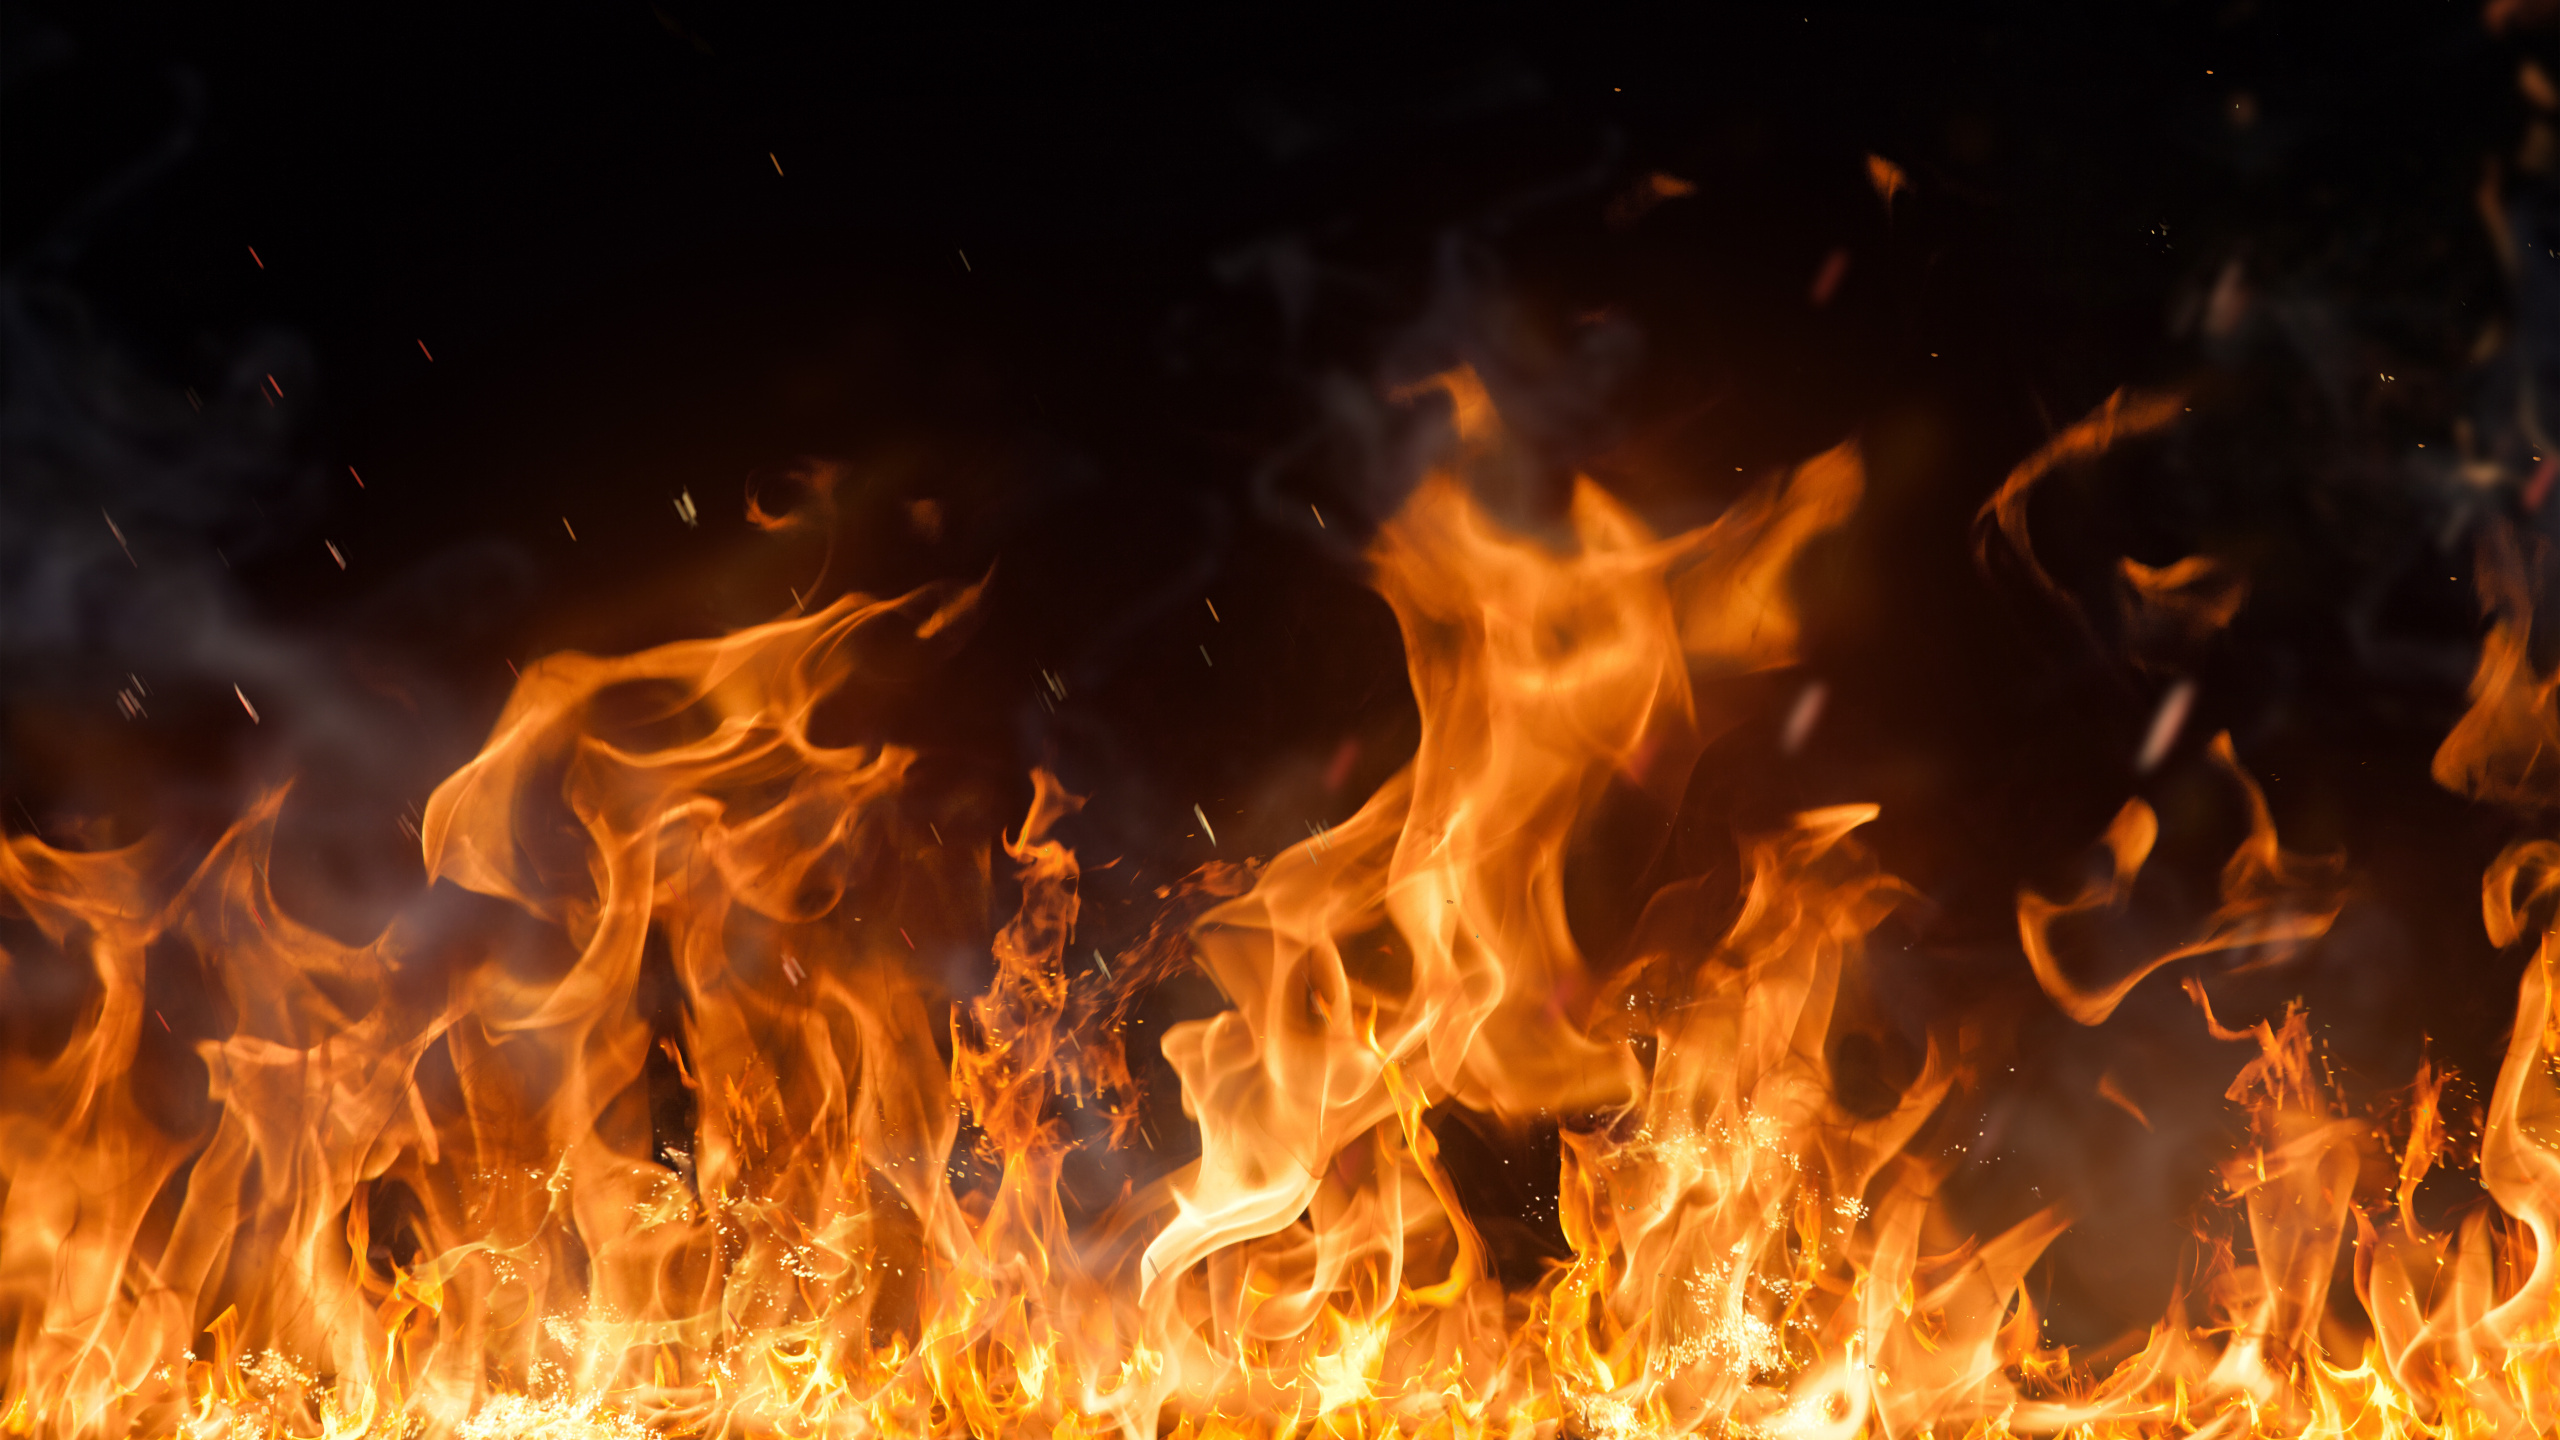 消防员, 火焰, 热, 篝火, 复合材料 壁纸 2560x1440 允许